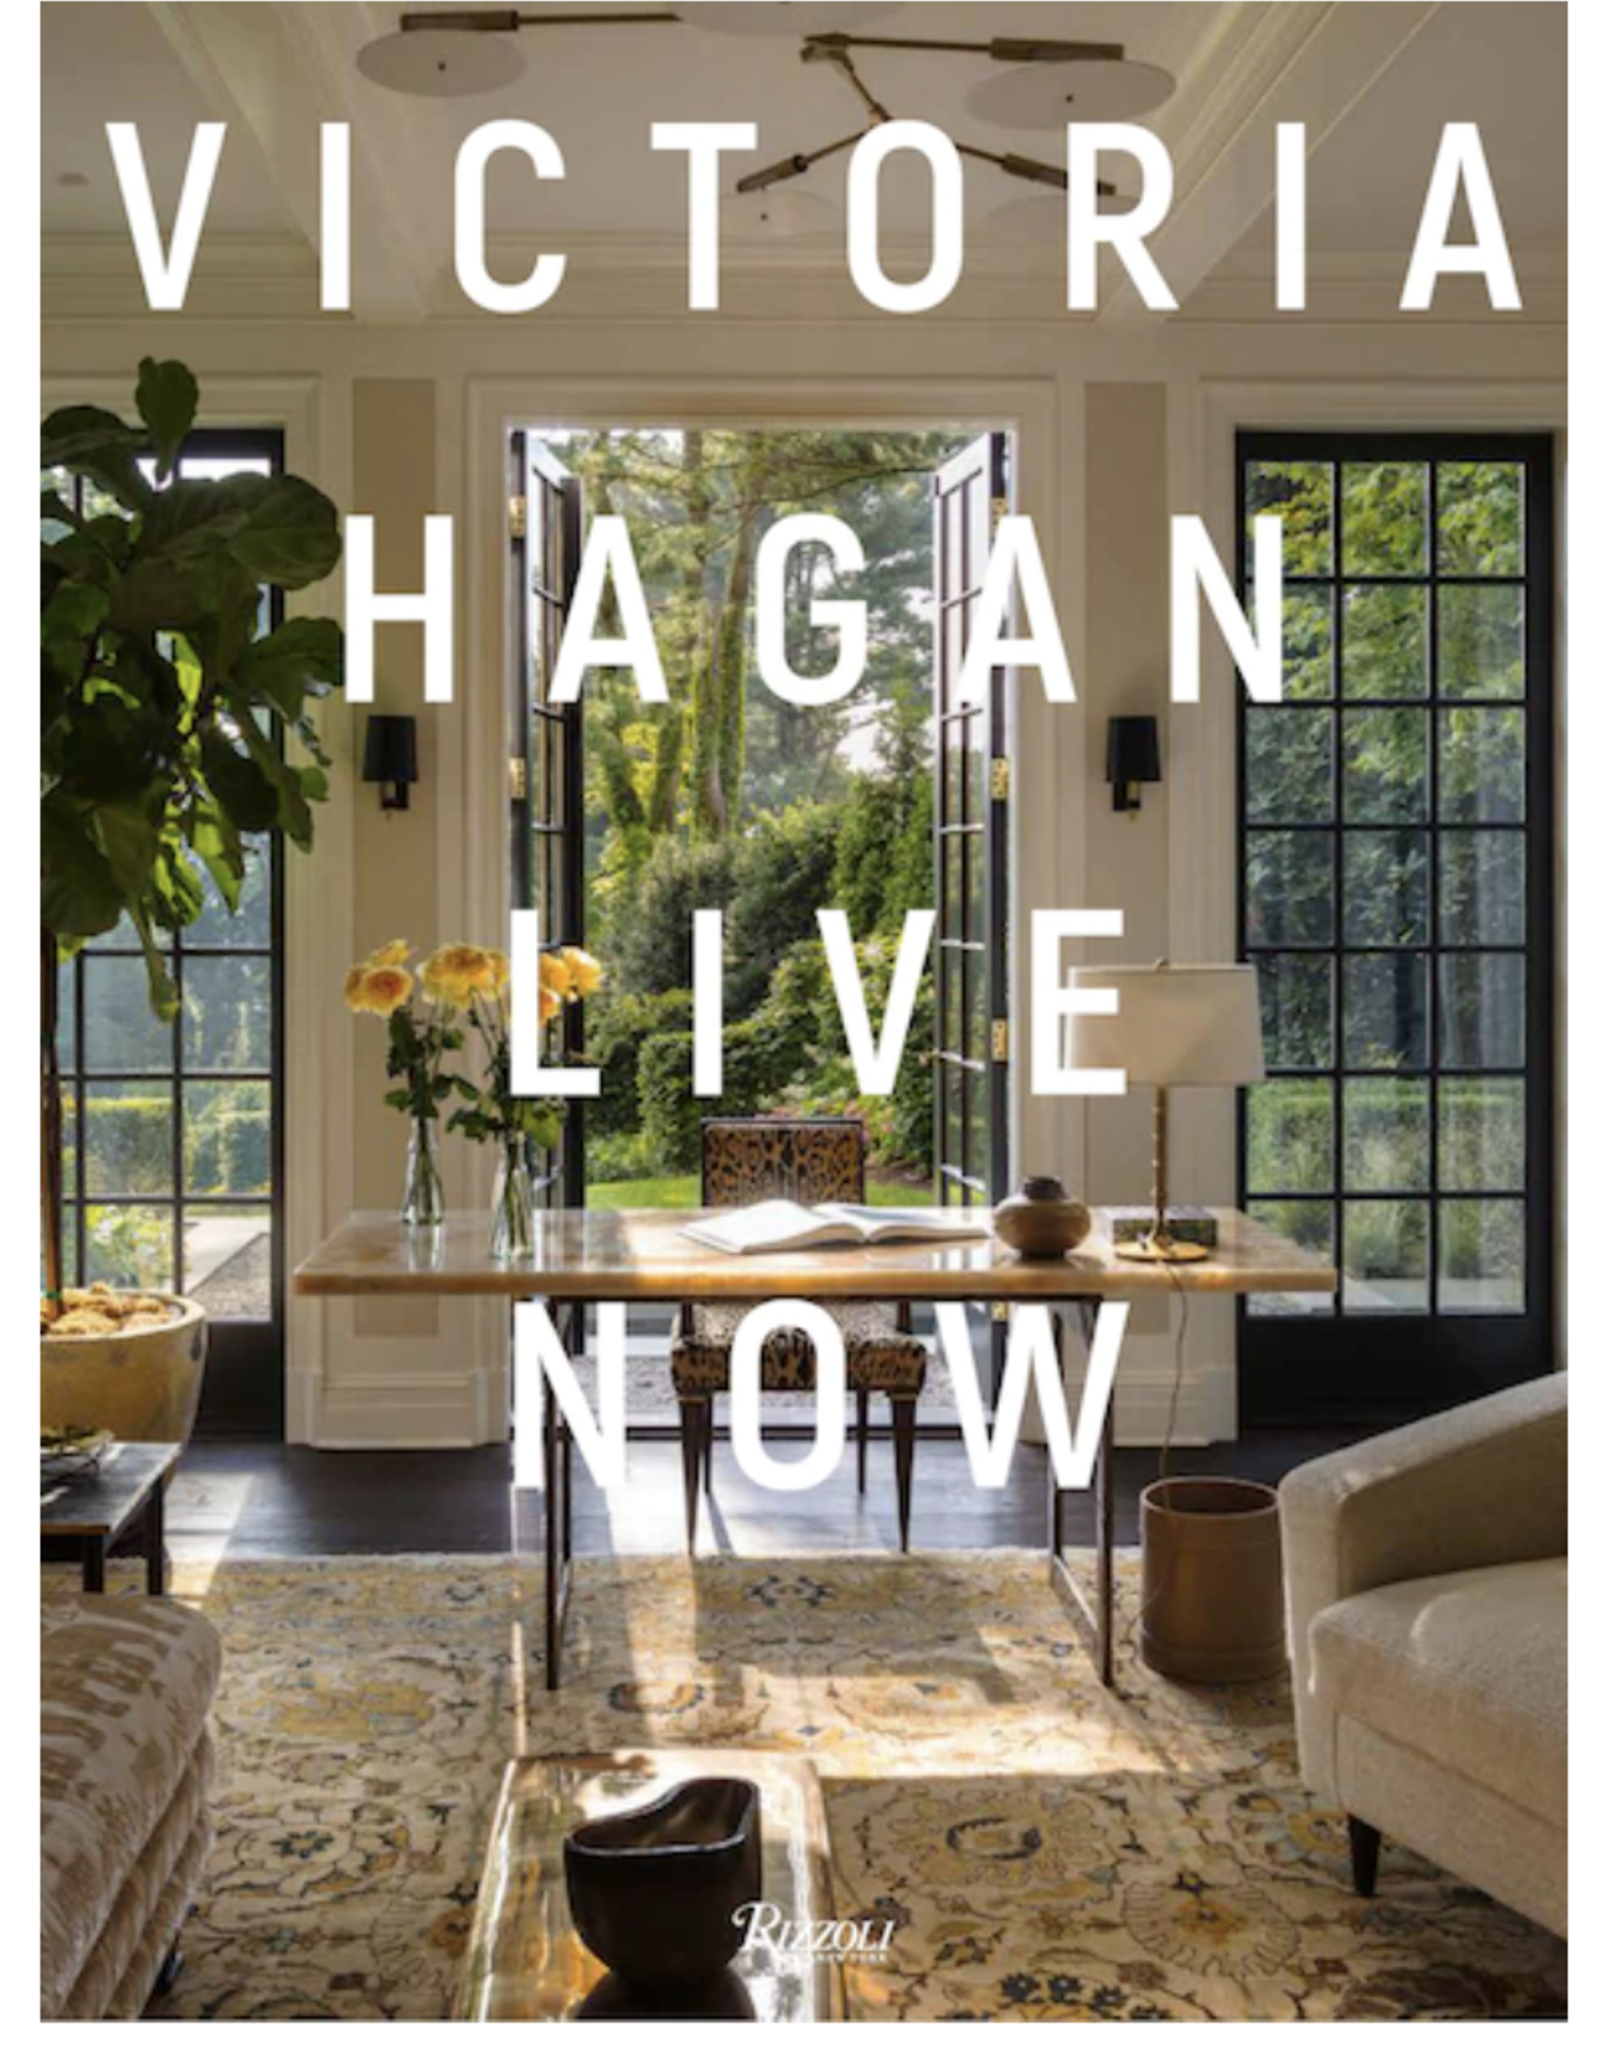 Victoria Hagan Live Now